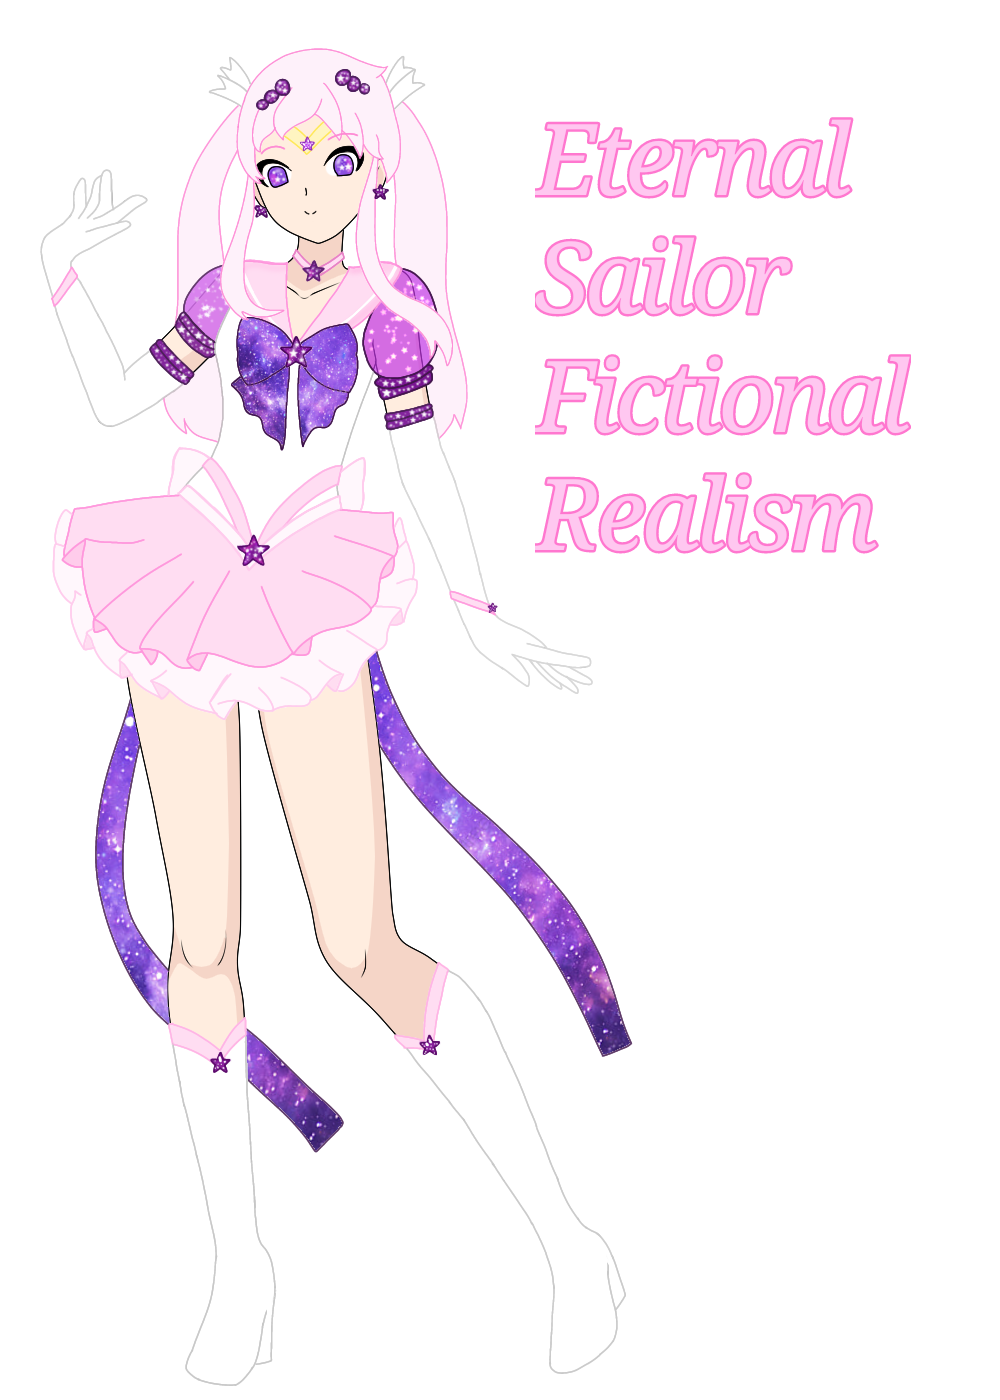 cosmic_bow highres kanori_fiction_(sailor_fictional_realism) madokasakurai pink_hair pink_sailor_collar pink_skirt sailor_collar skirt violet_eyes